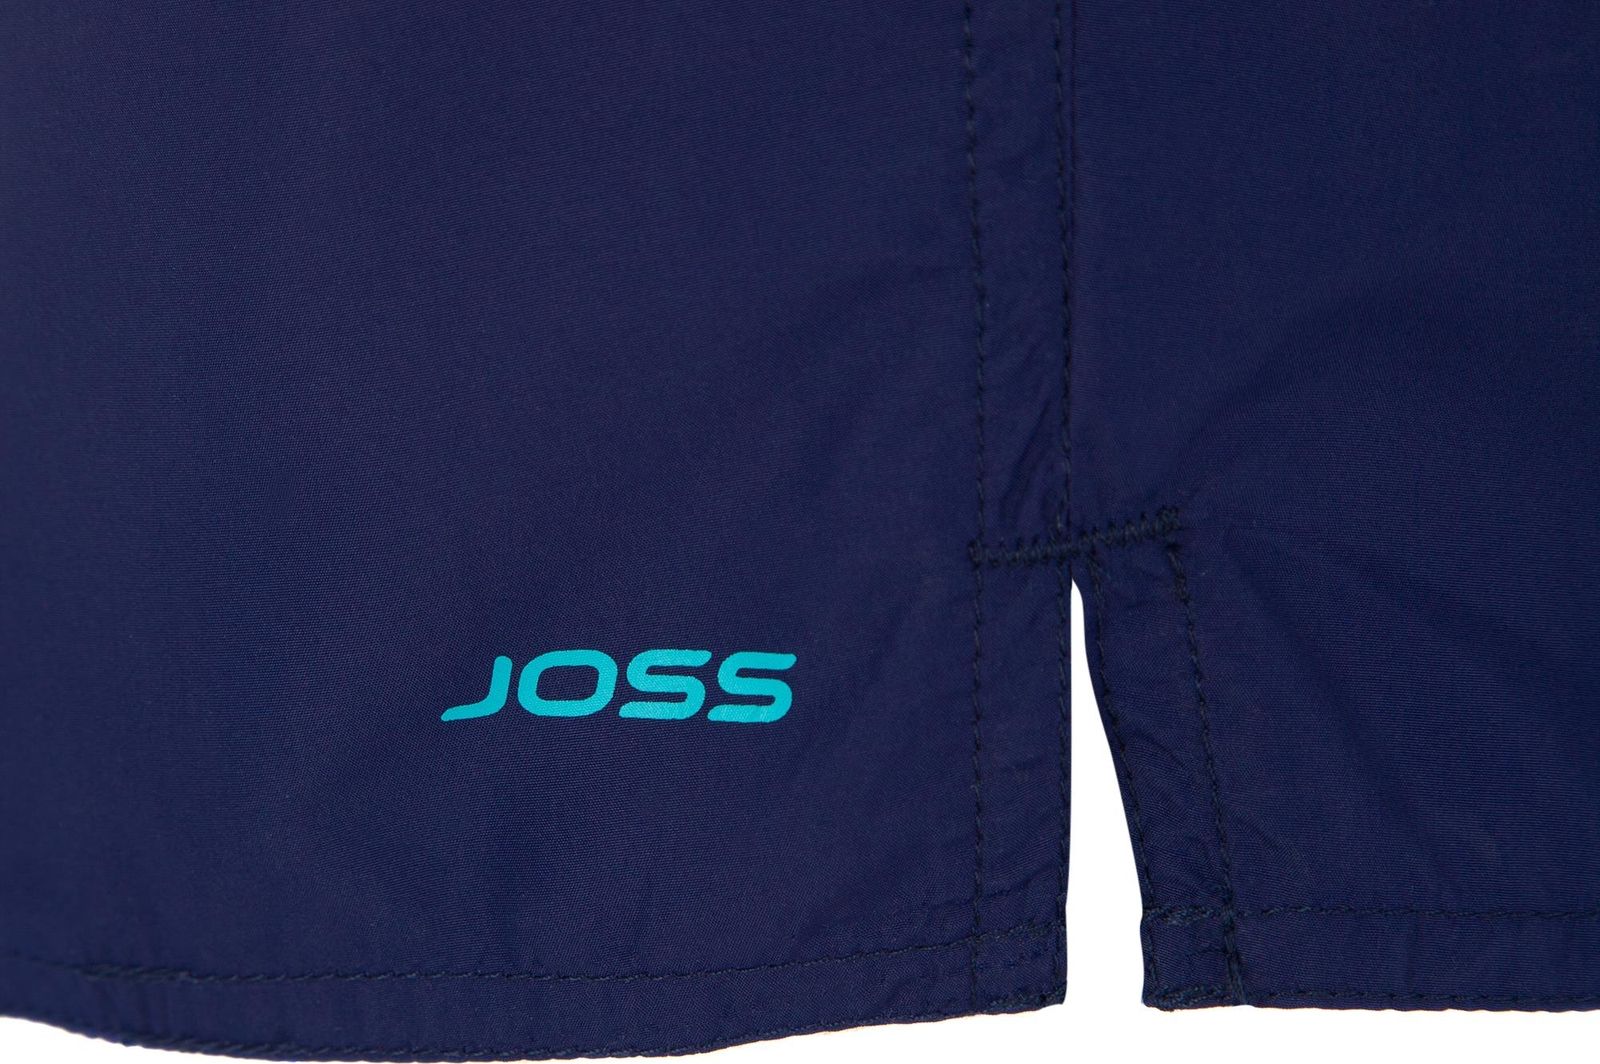     Joss Men's shorts, : . MSW40S6-V4.  50